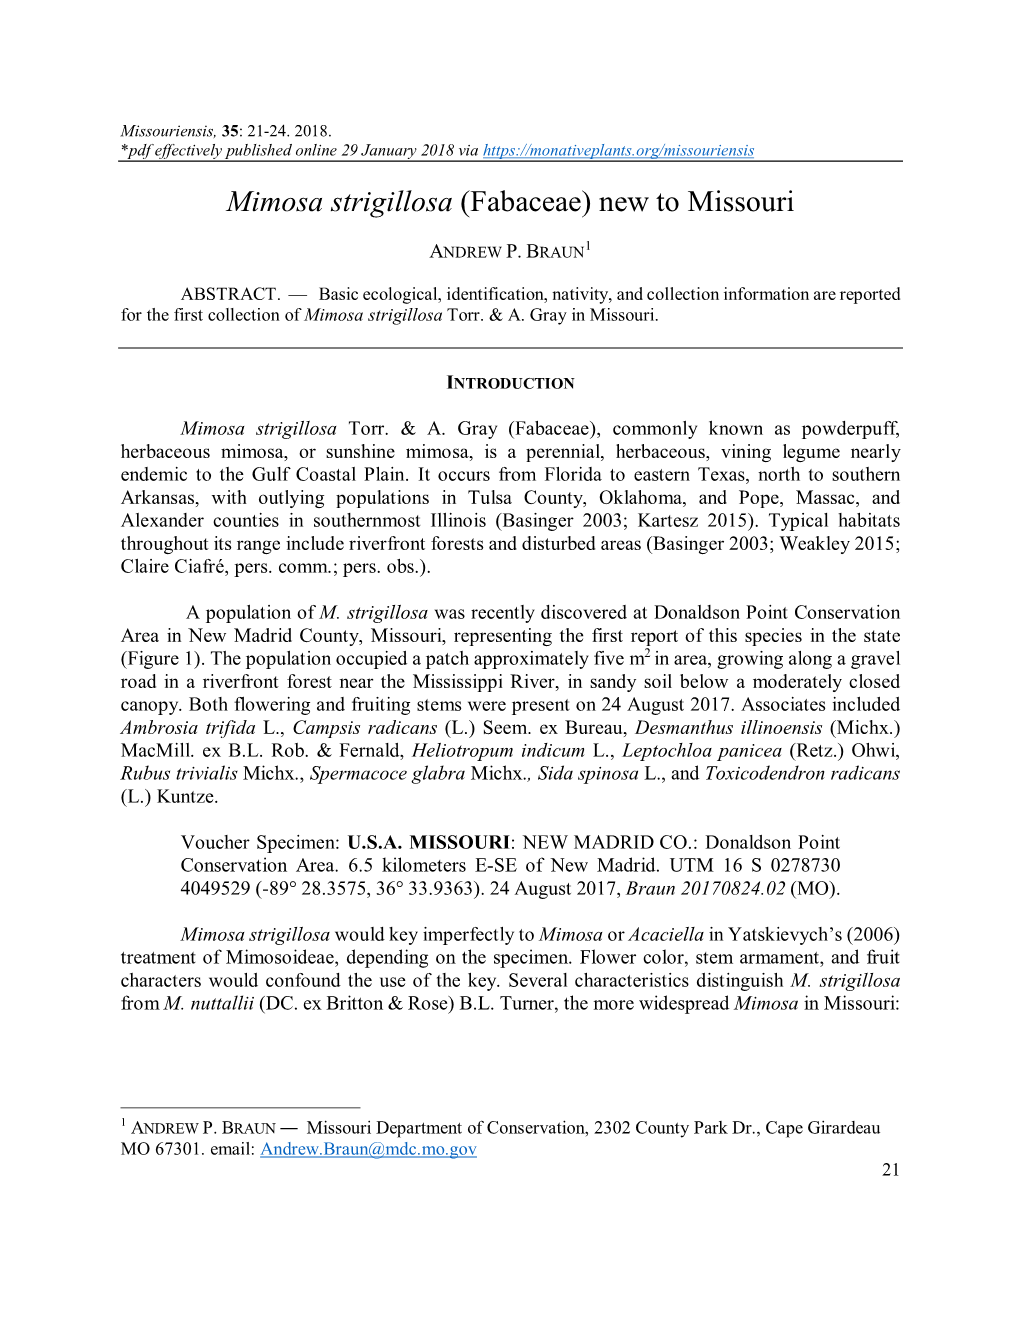 Mimosa Strigillosa (Fabaceae) New to Missouri